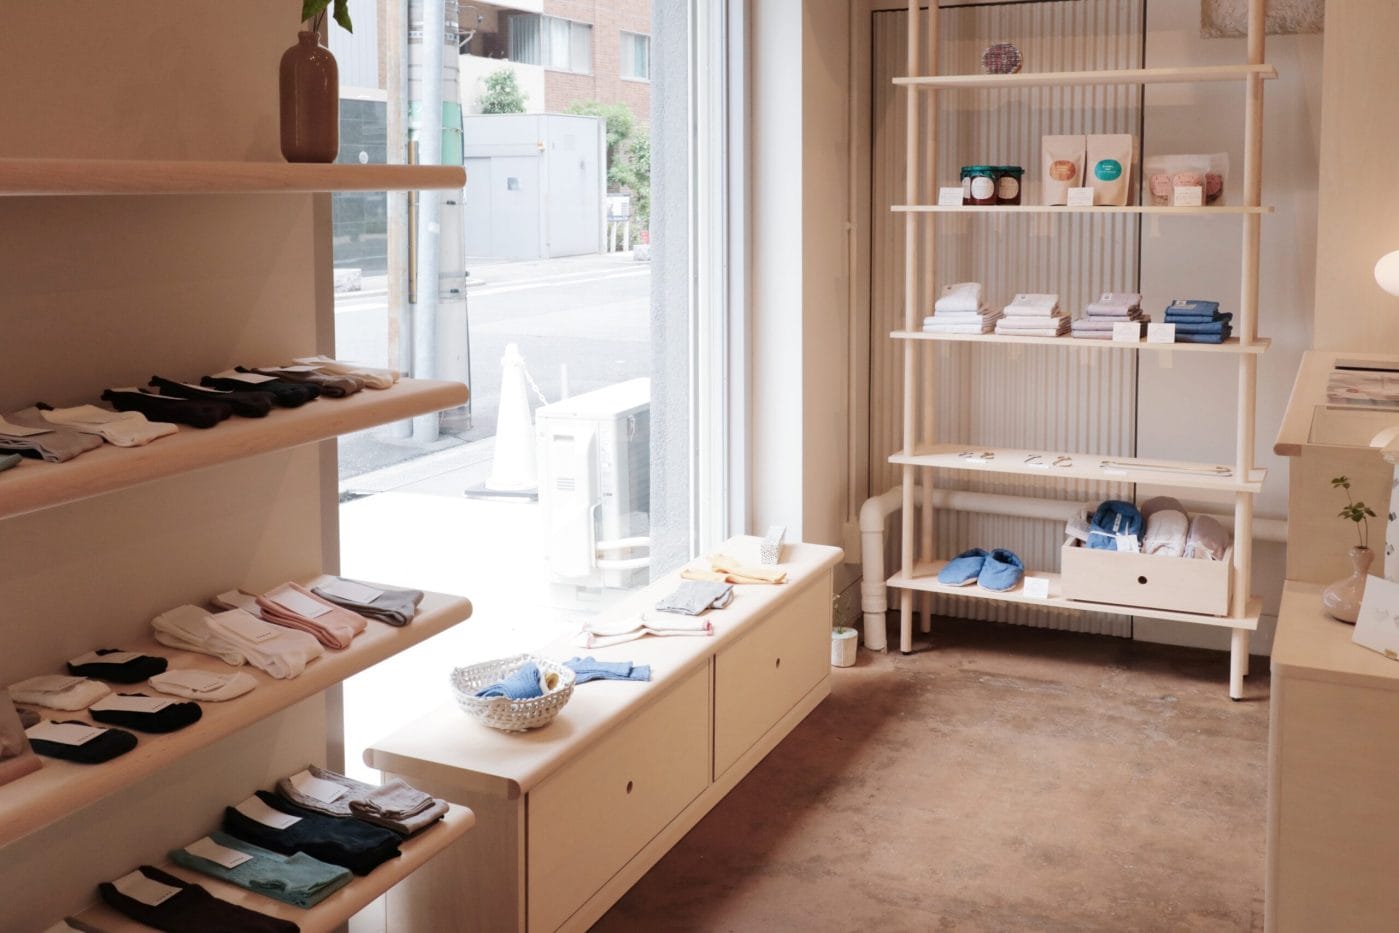 ファクトリー生まれの靴下ブランド「NISHIGUCHI KUTSUSHITA」。初の実店舗が南船場にオープン。